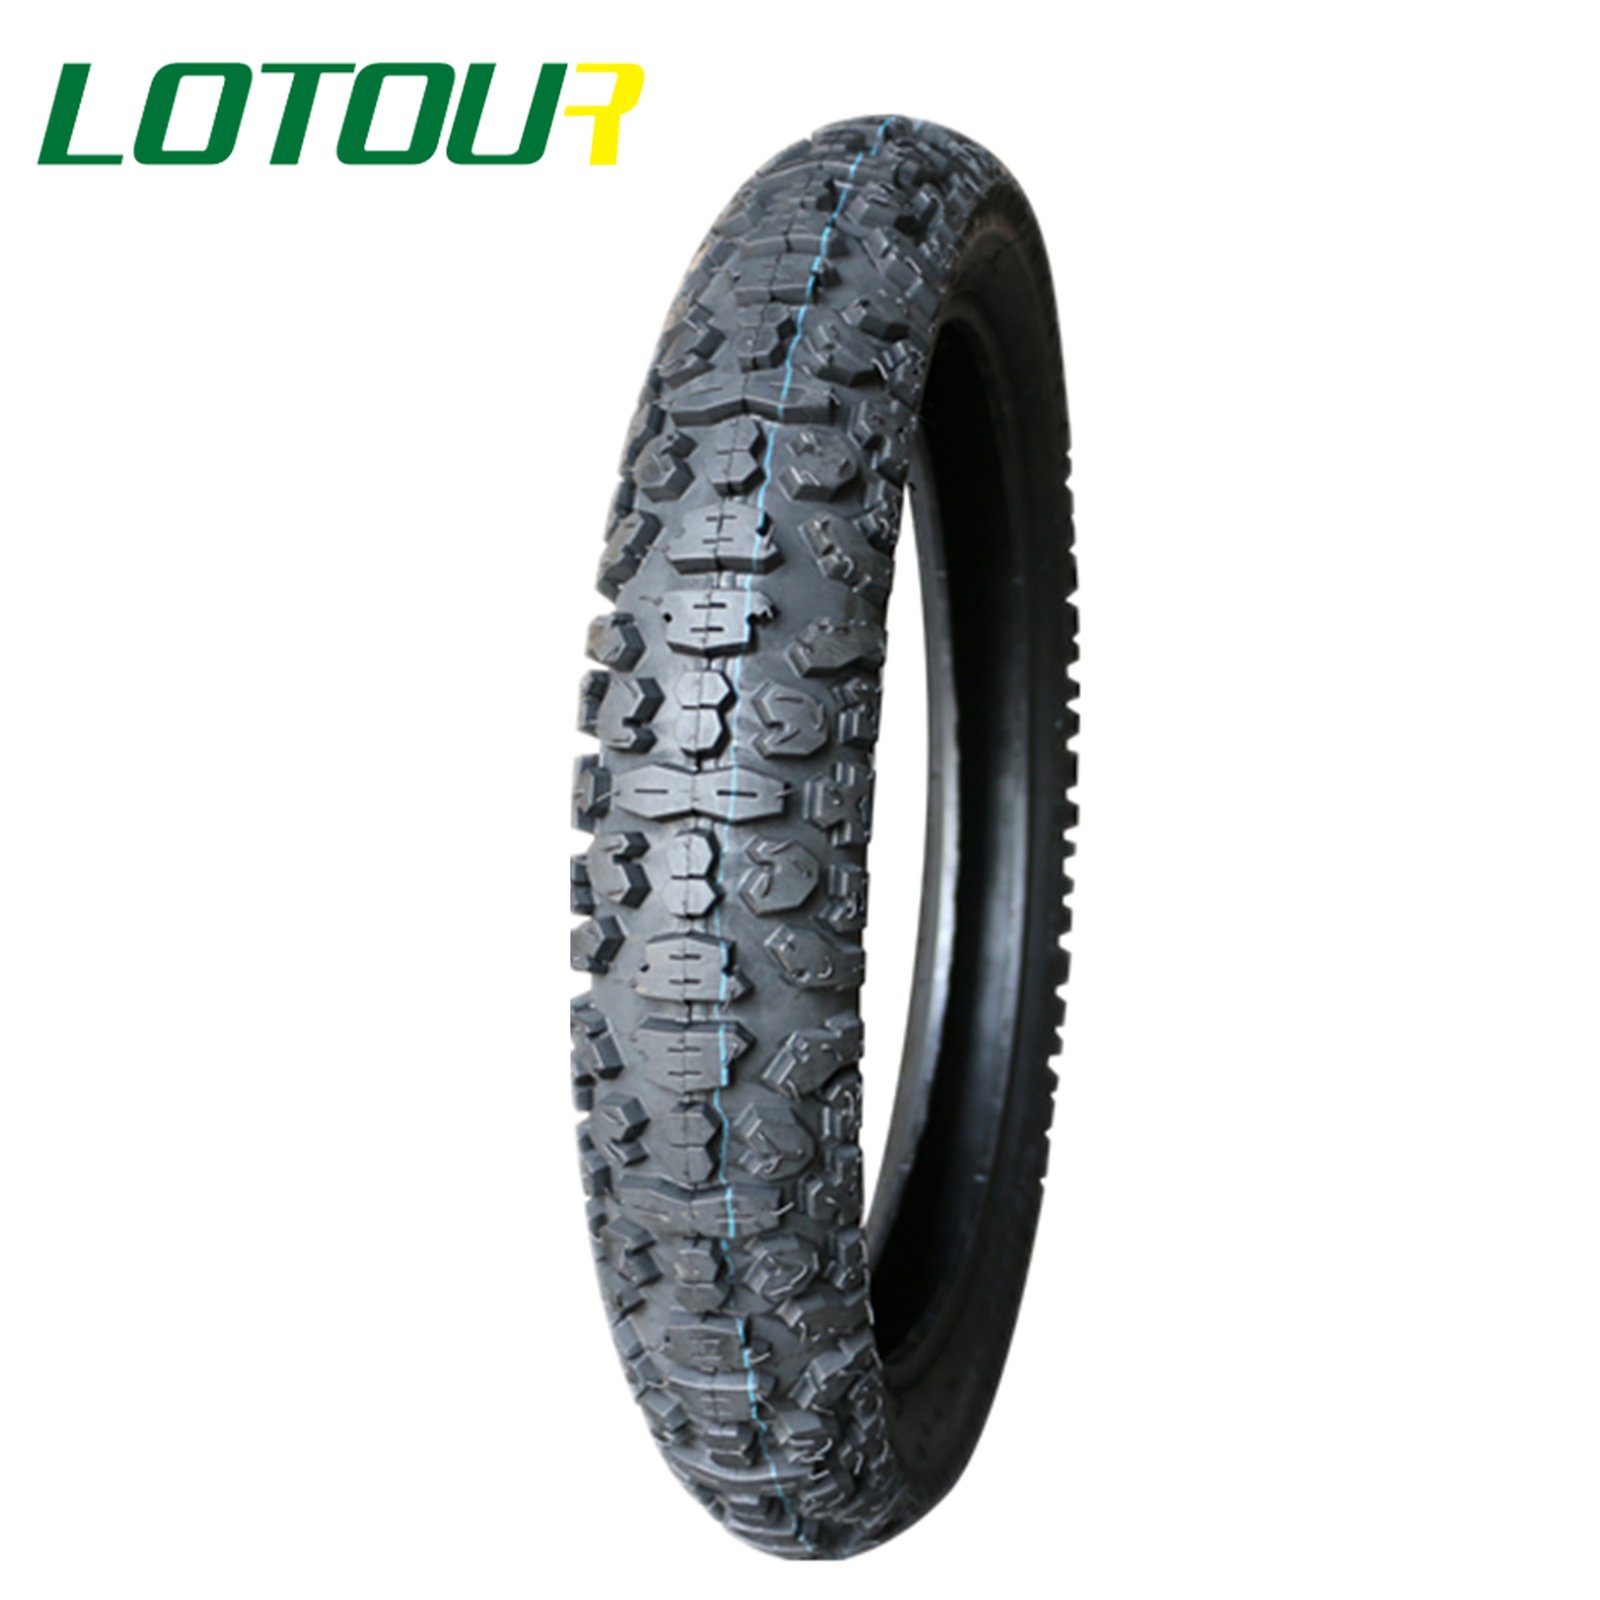 Lotour Tire M2013